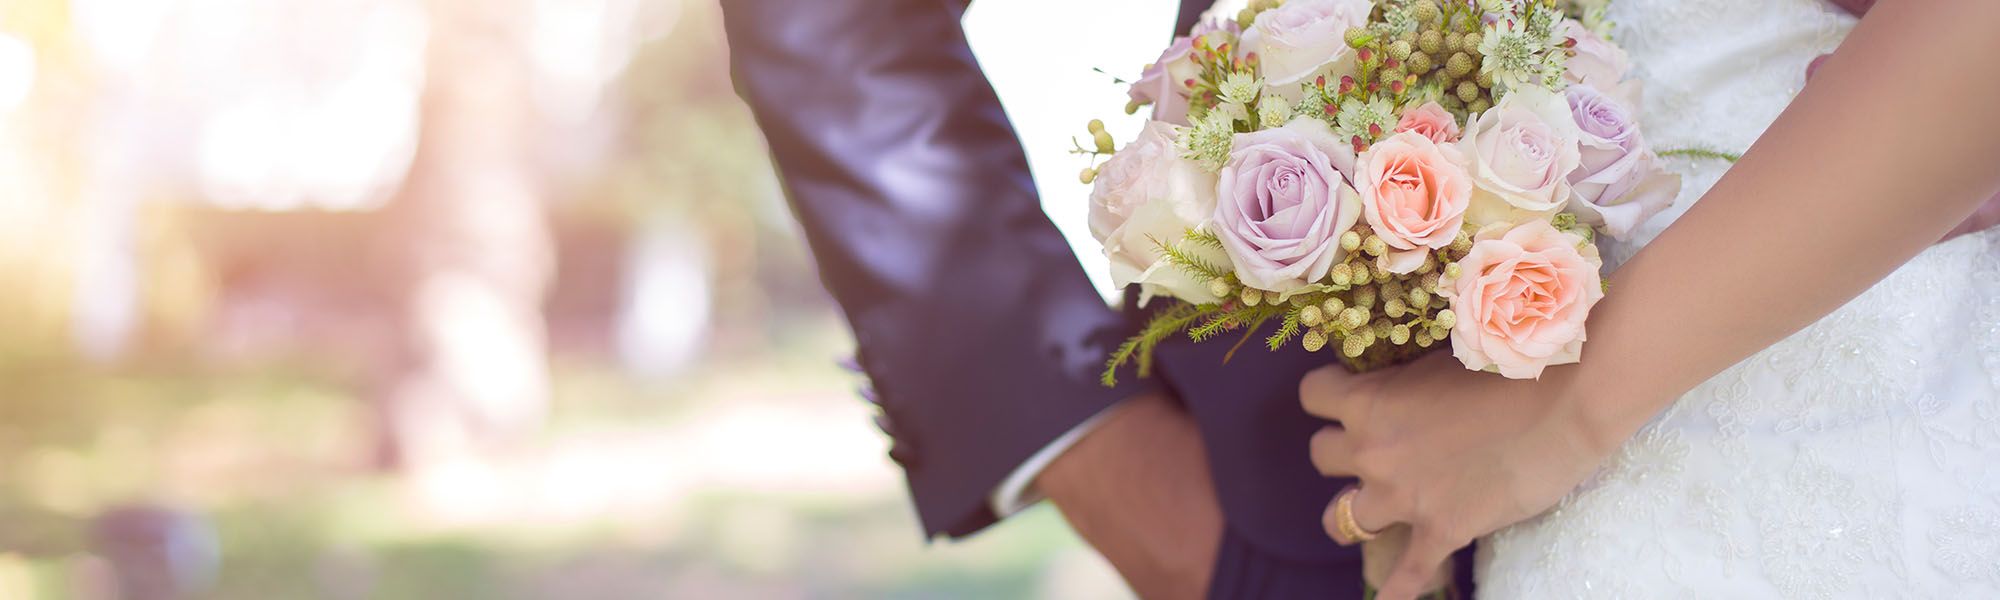 marié et mariée tenant un bouquet